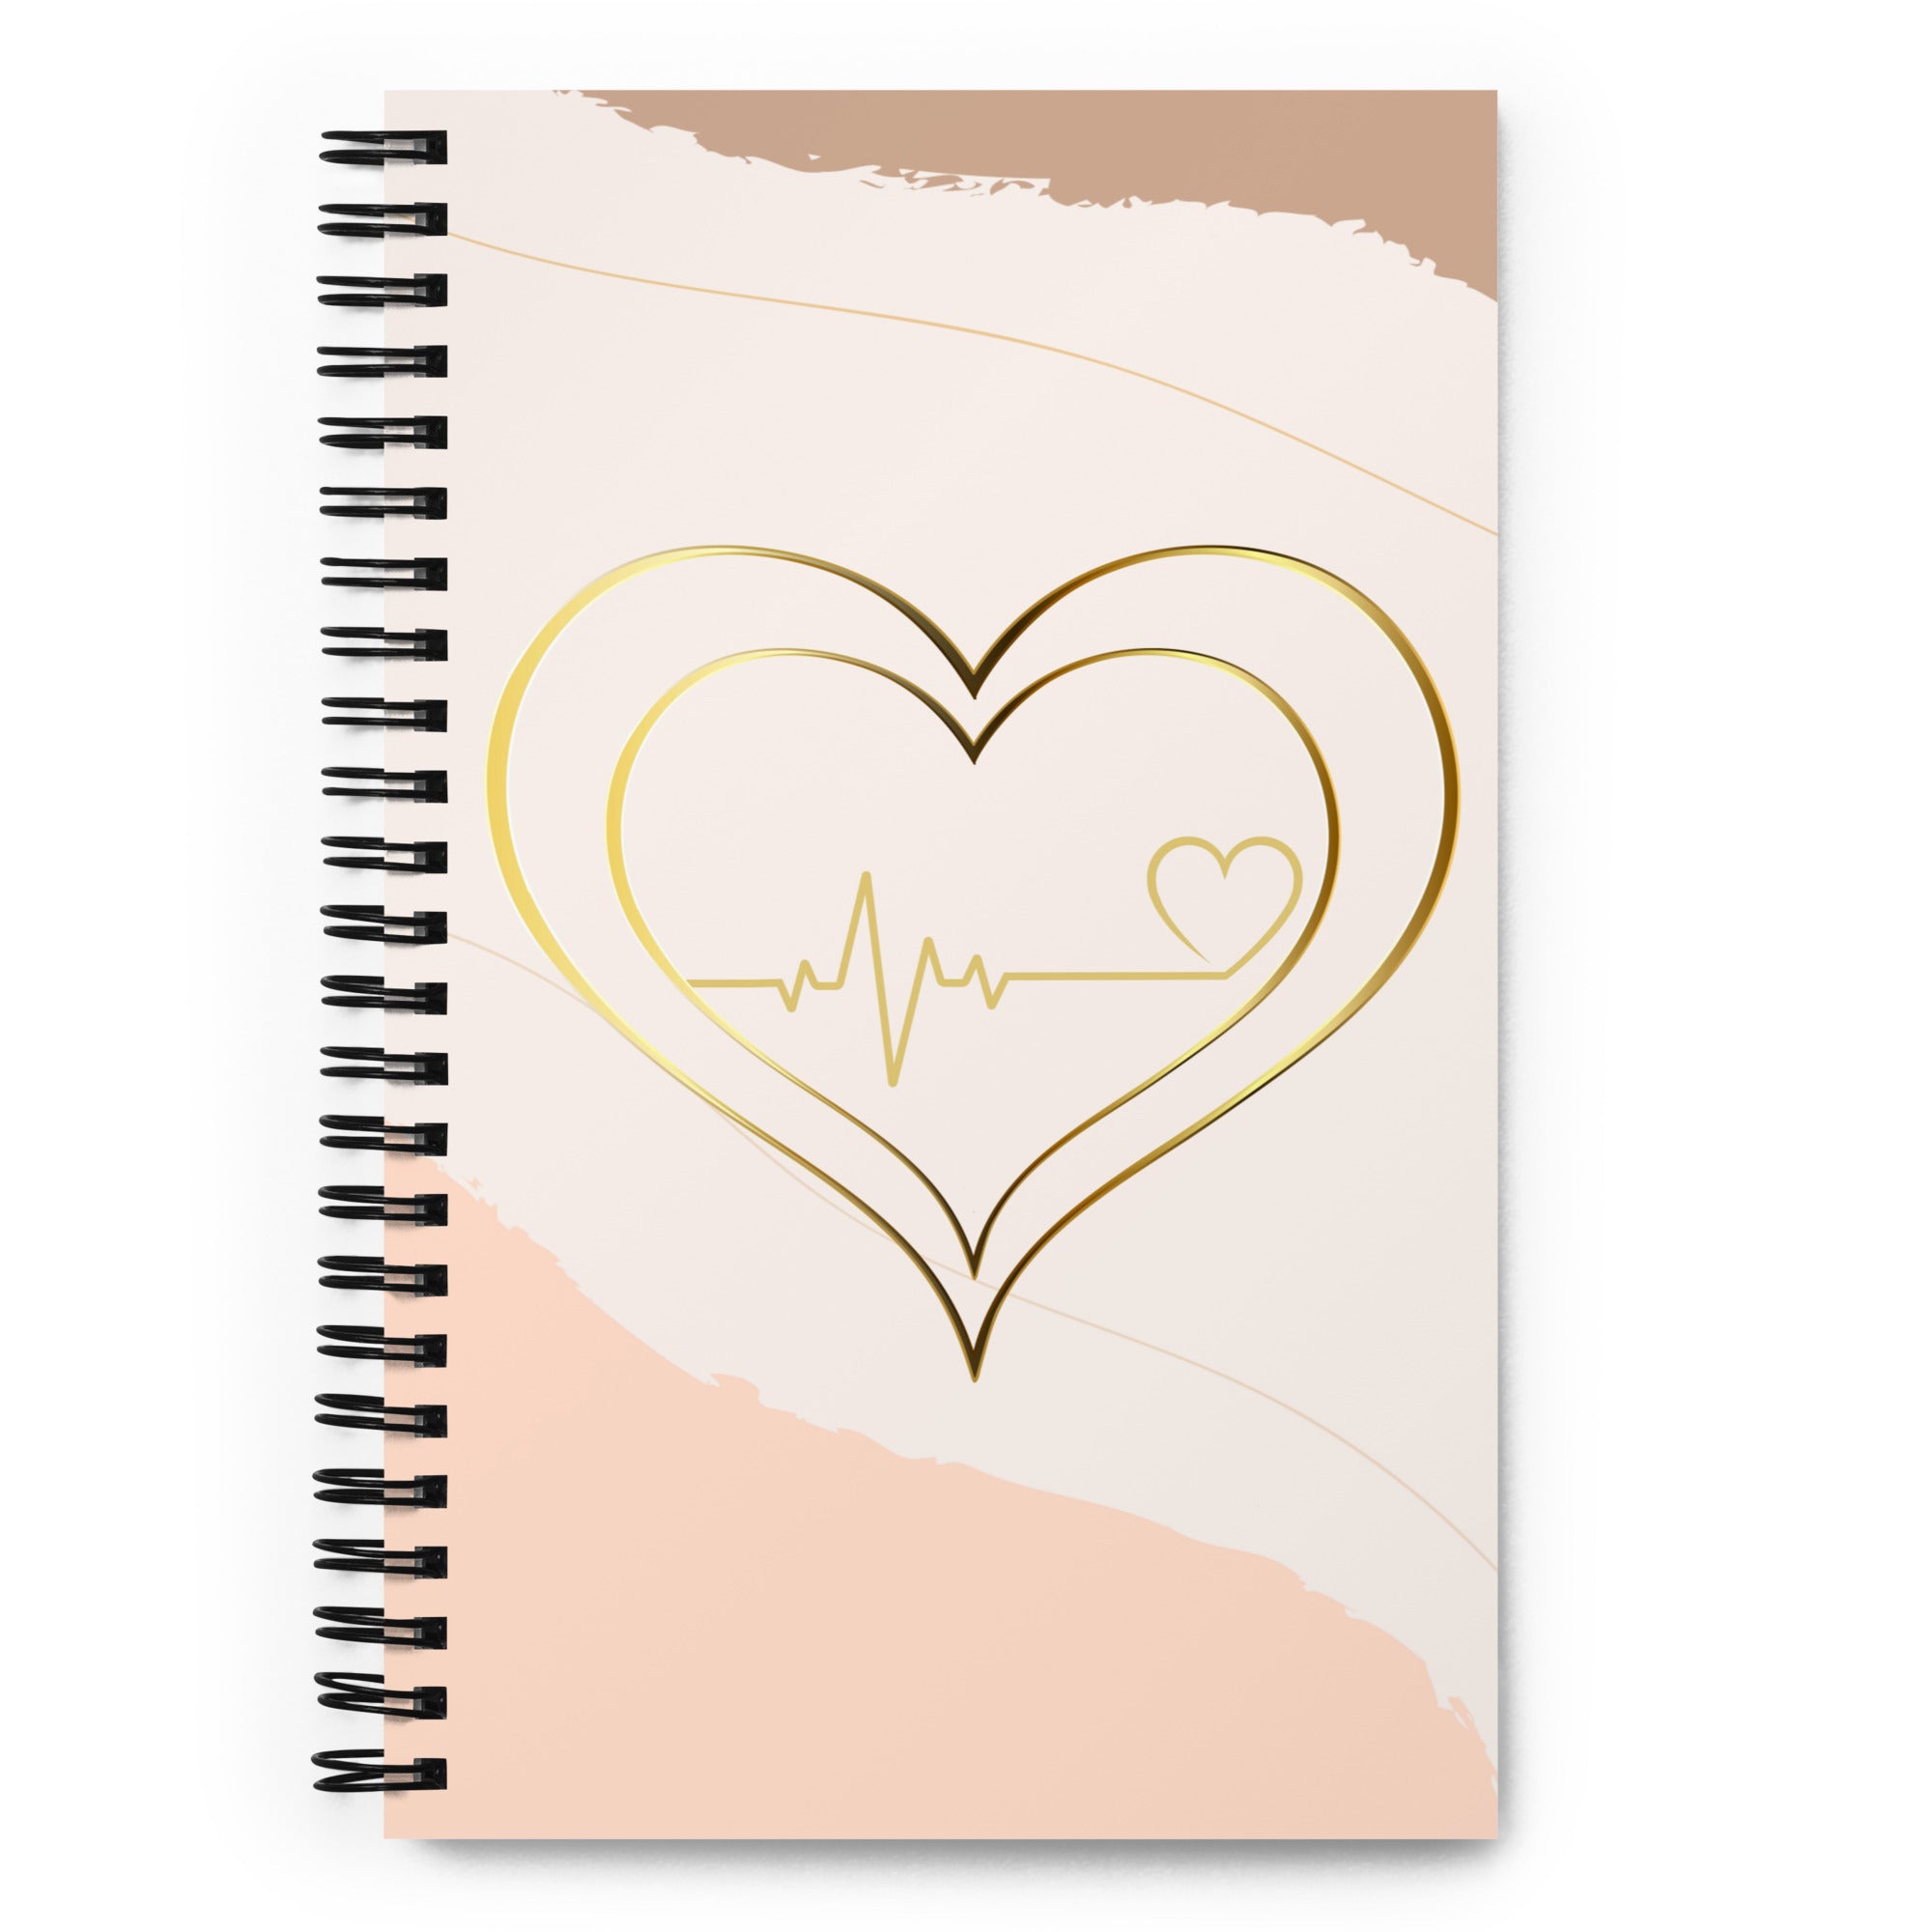 Heart That Beats Spiral notebook